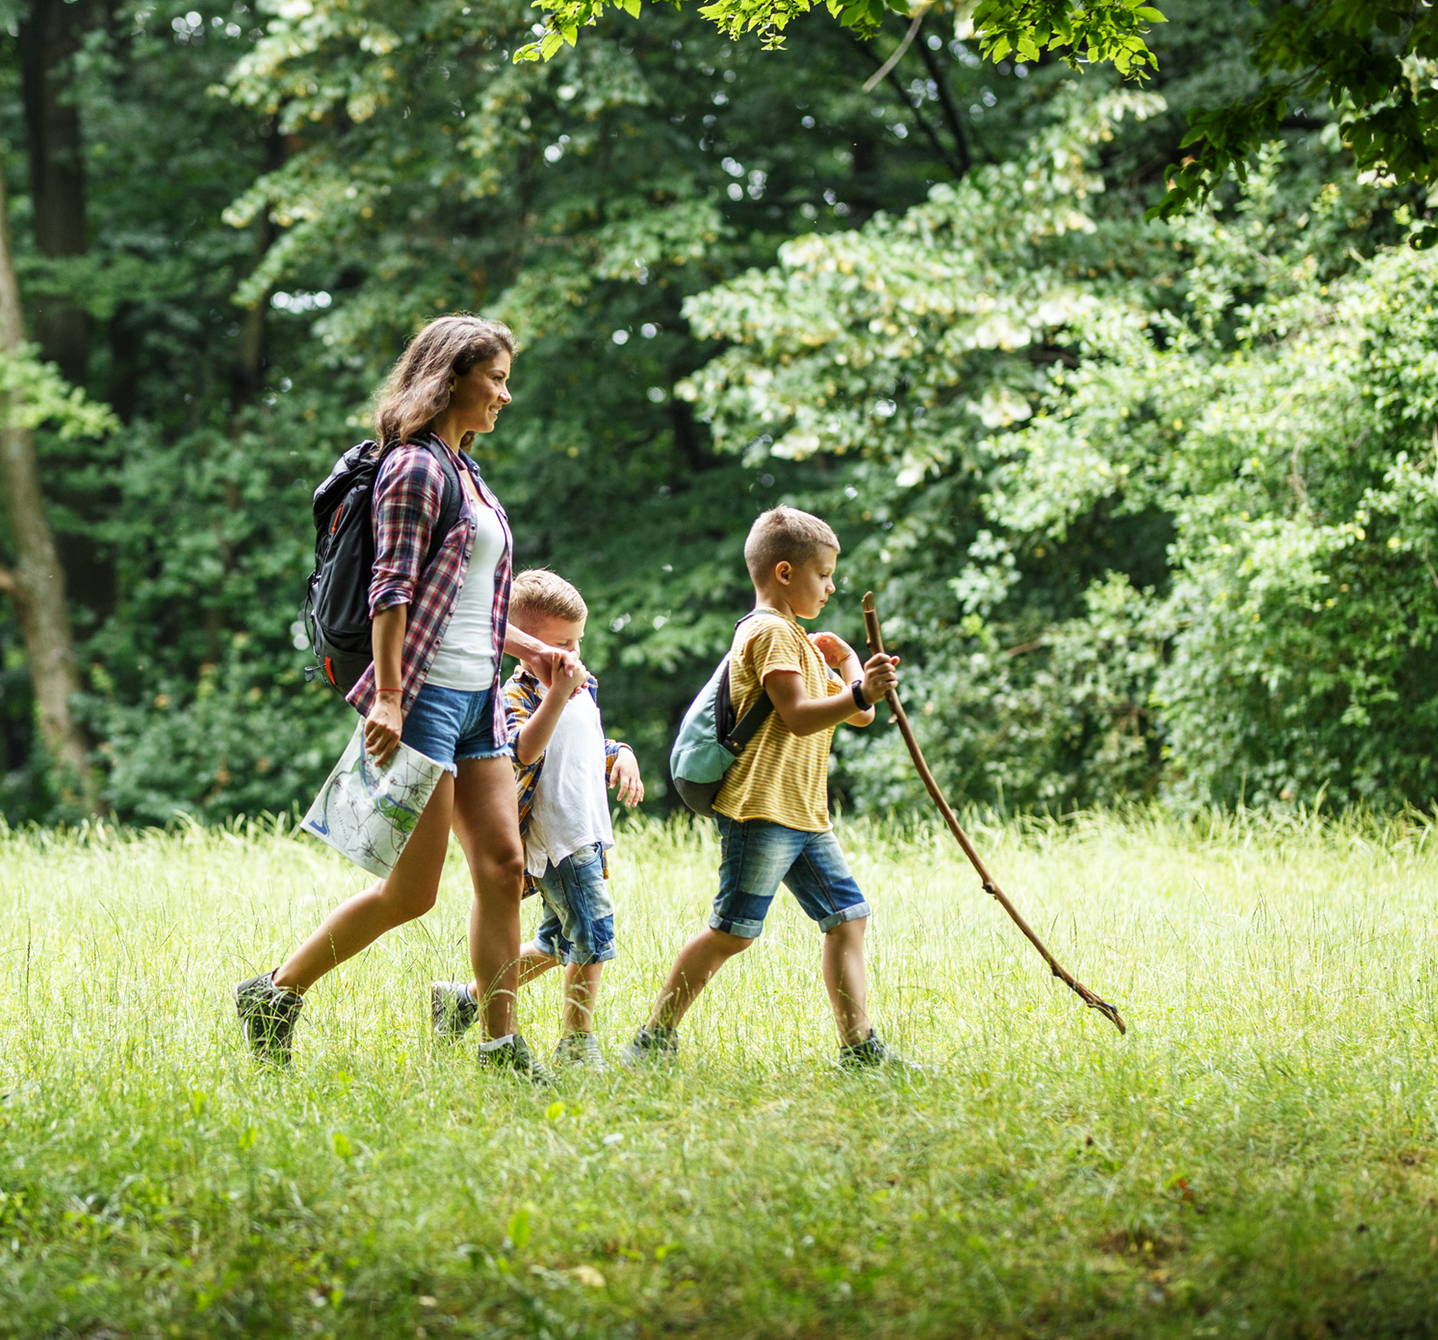 Máma a dvě malé děti na letní túře v lese. Procházejí travnatými mýtinami a hledají místo na piknik.